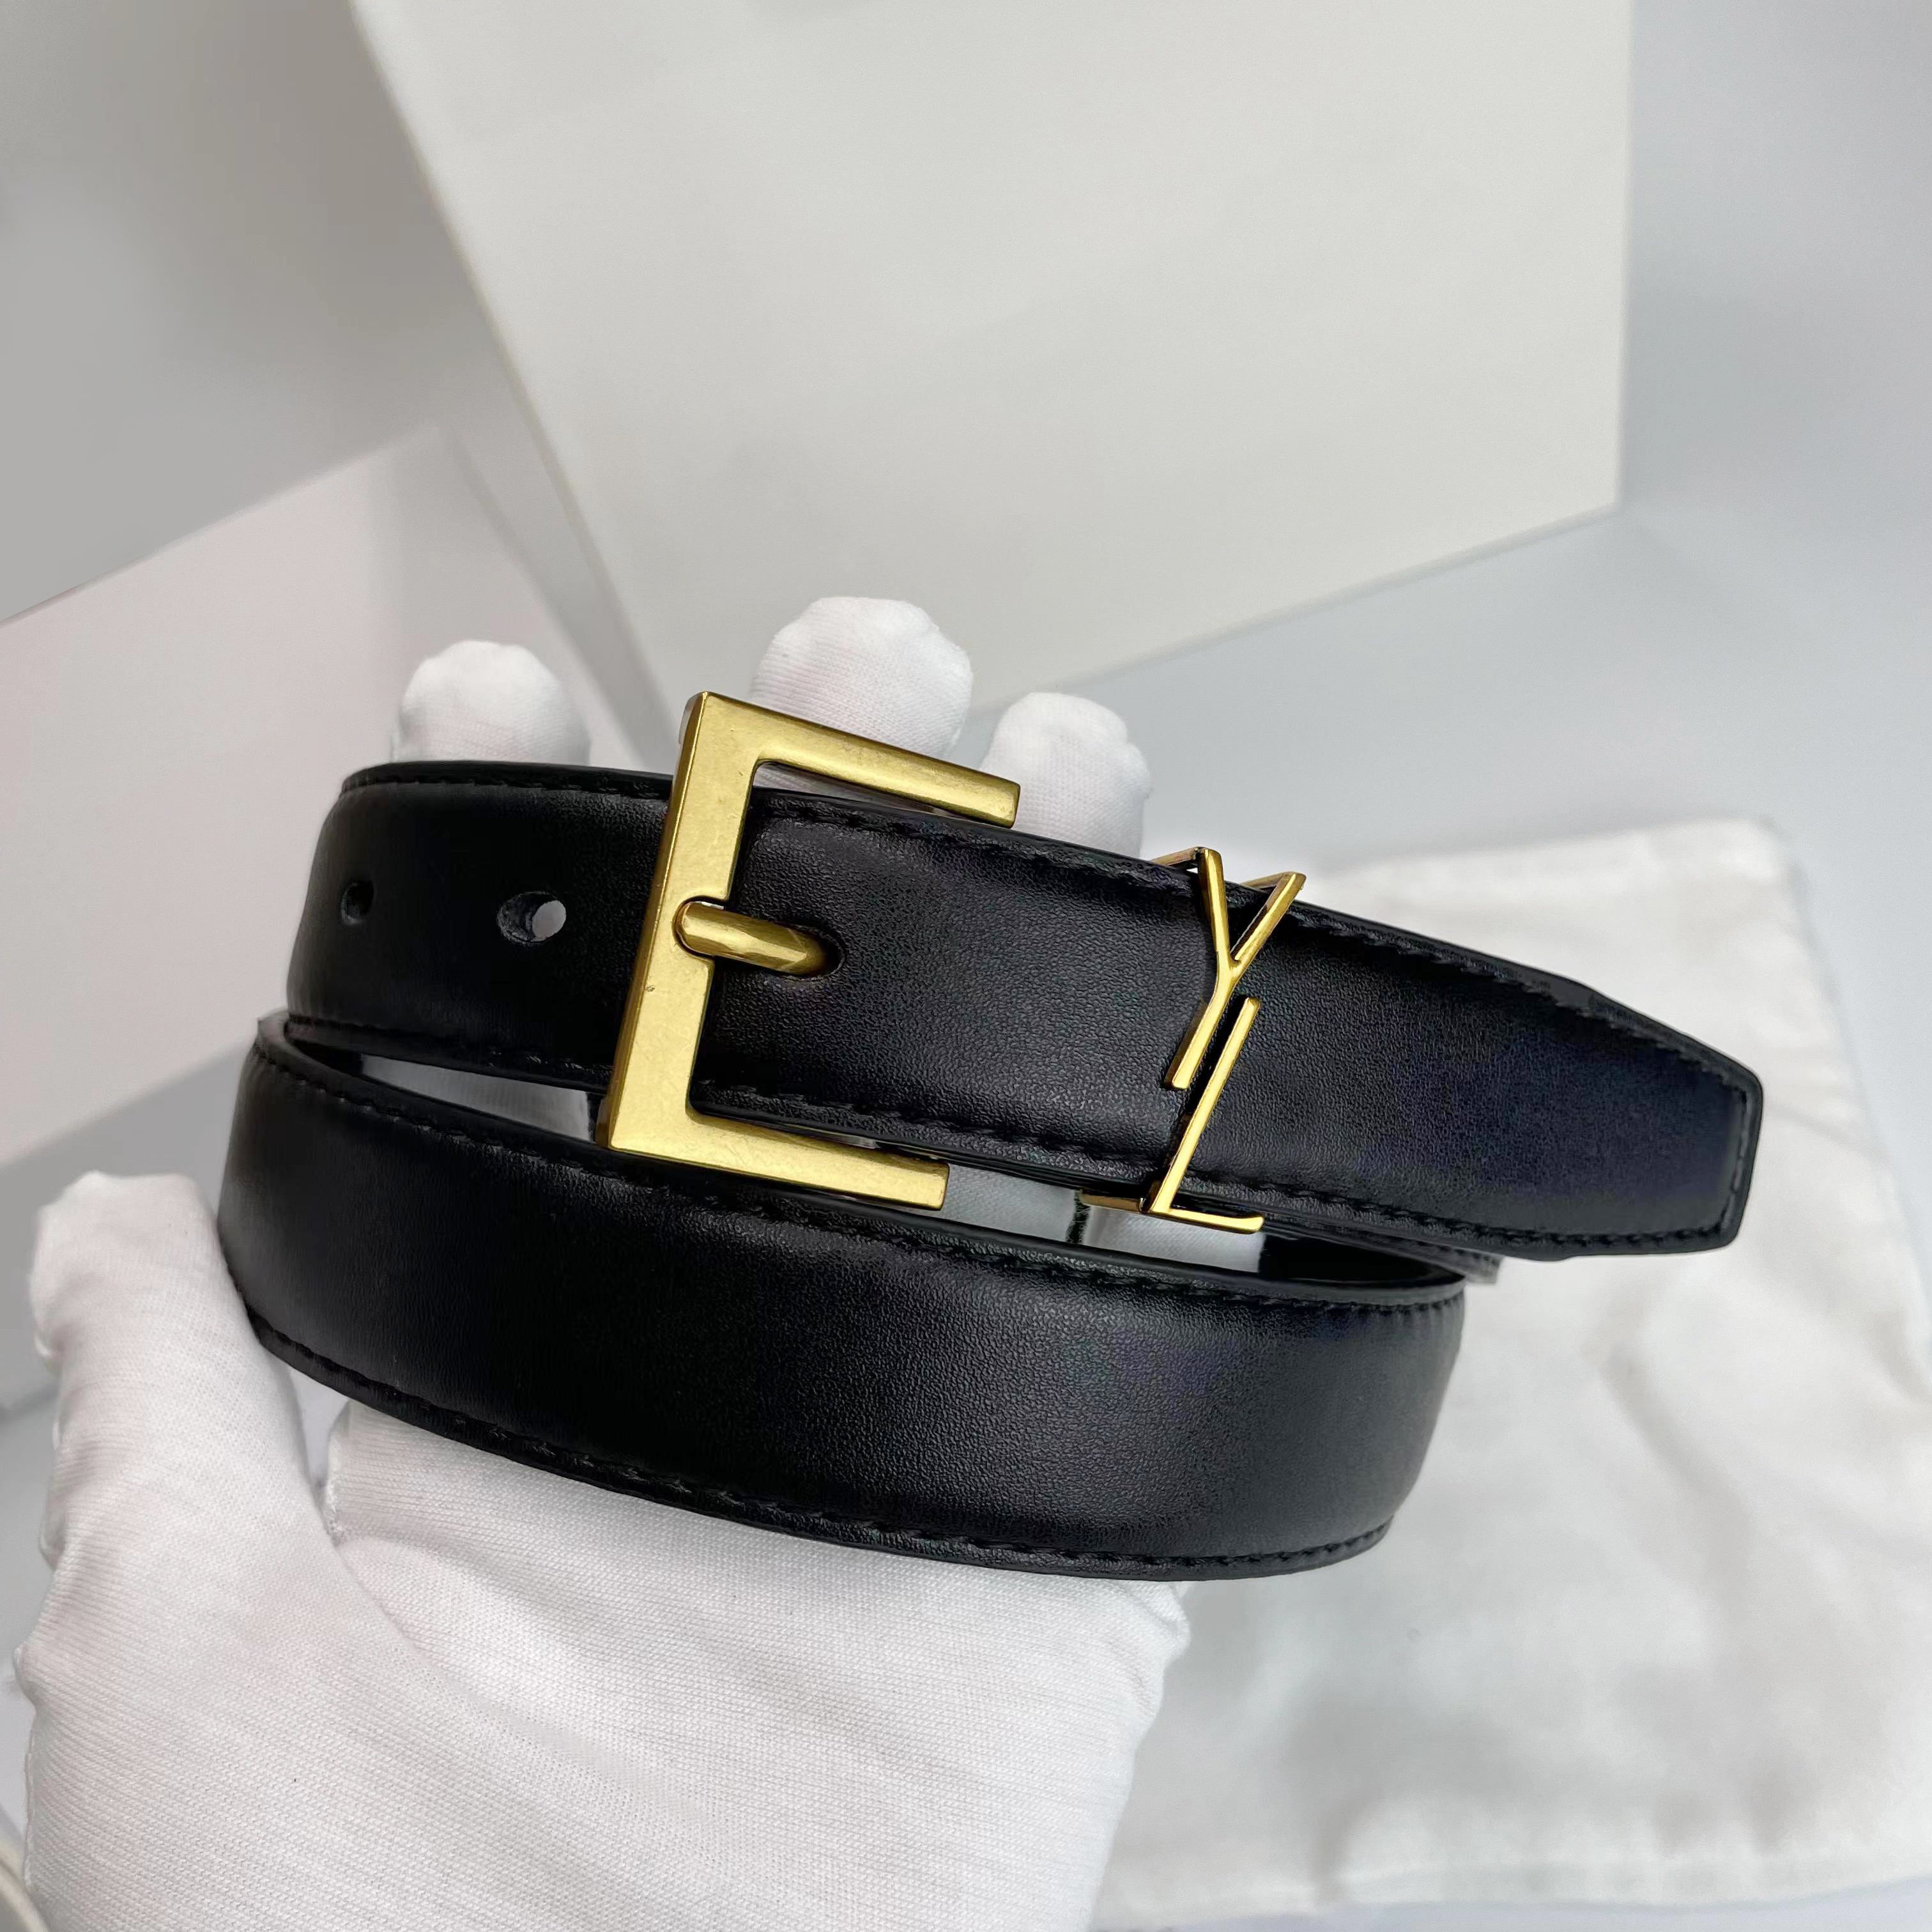 Hebilla de bronce + cinturón negro